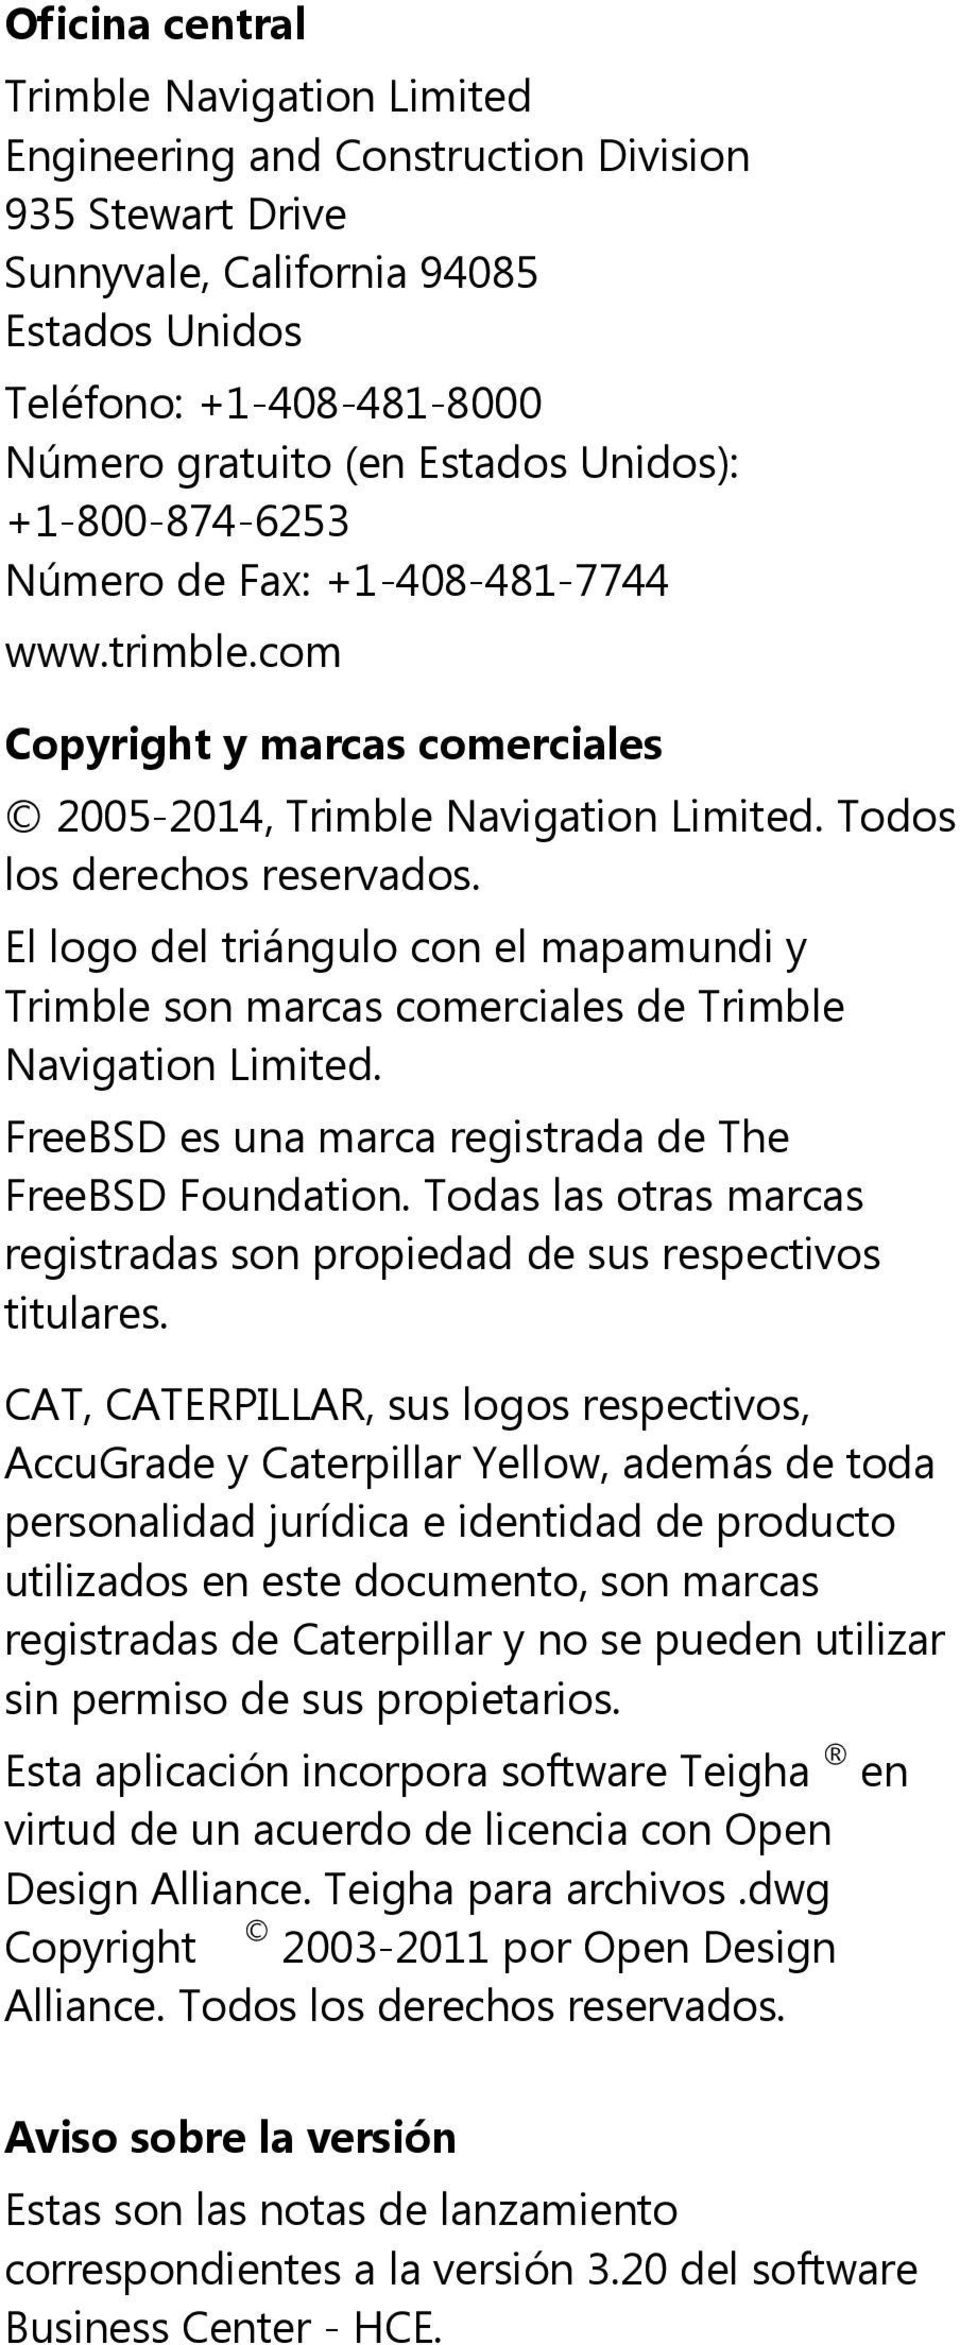 El logo del triángulo con el mapamundi y Trimble son marcas comerciales de Trimble Navigation Limited. FreeBSD es una marca registrada de The FreeBSD Foundation.